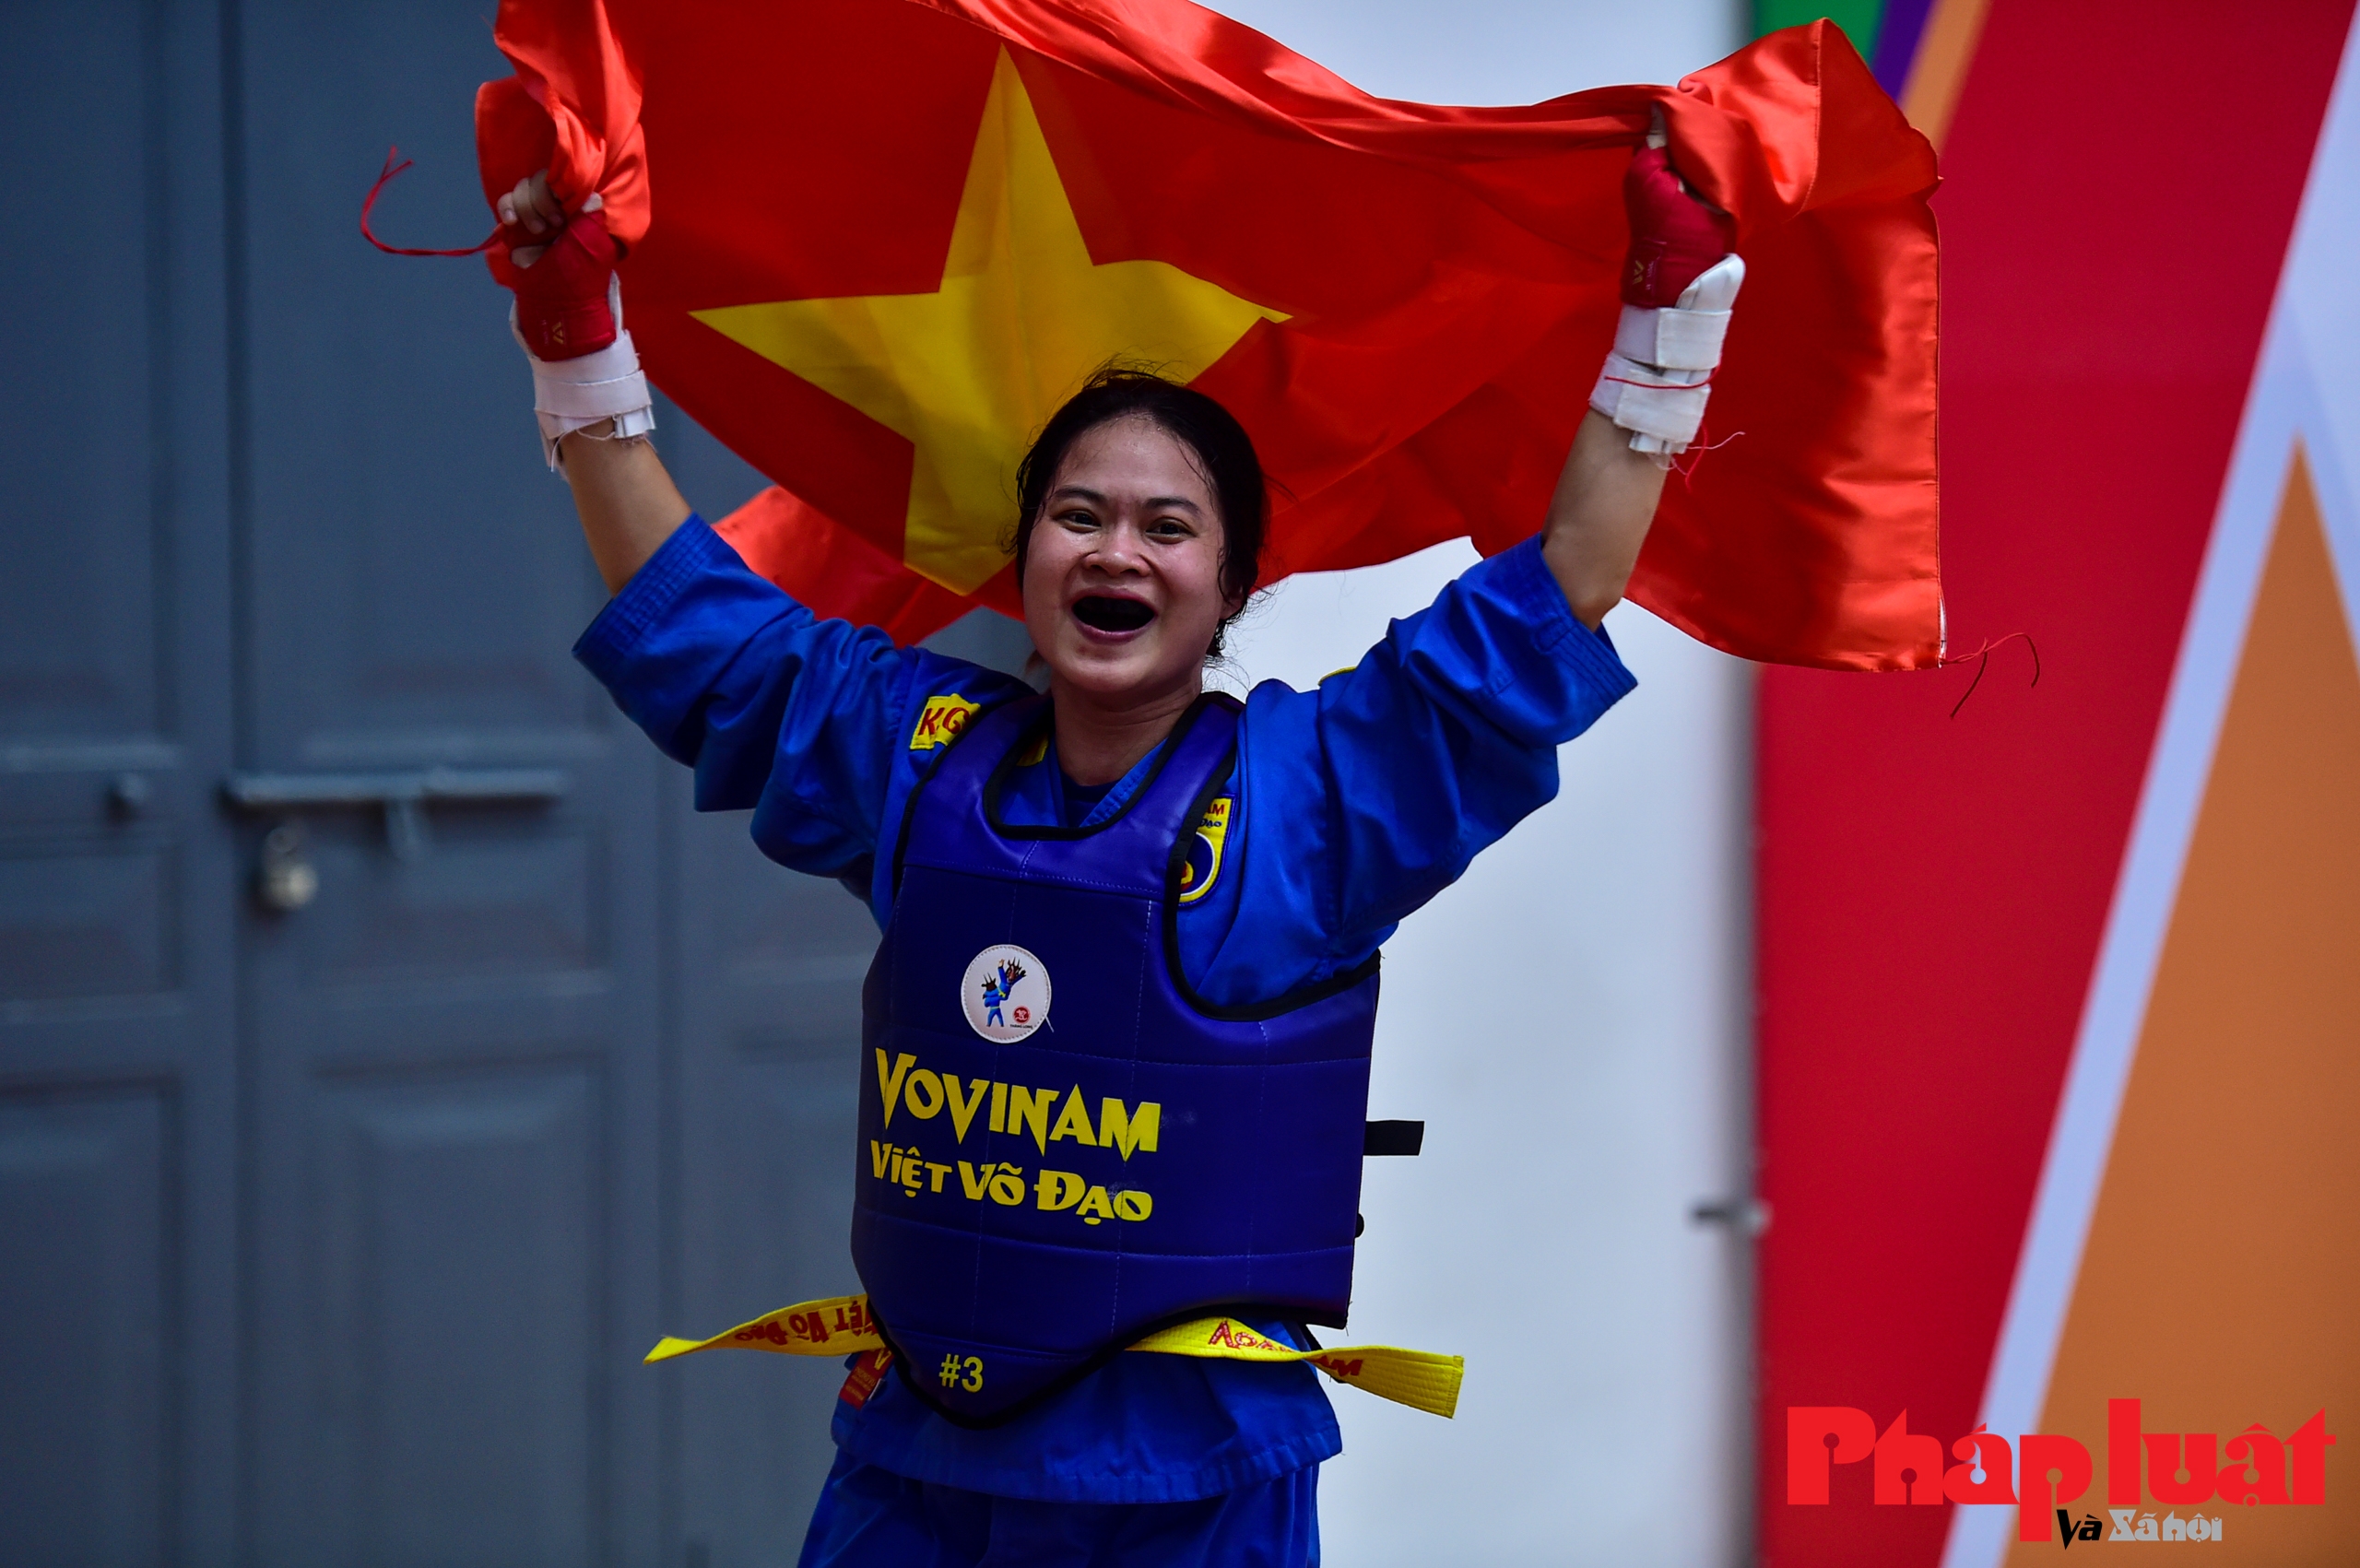 Cô gái Bến Tre giành HCV đầu tiên cho “Quốc võ” Việt Nam tại SEA Games 31